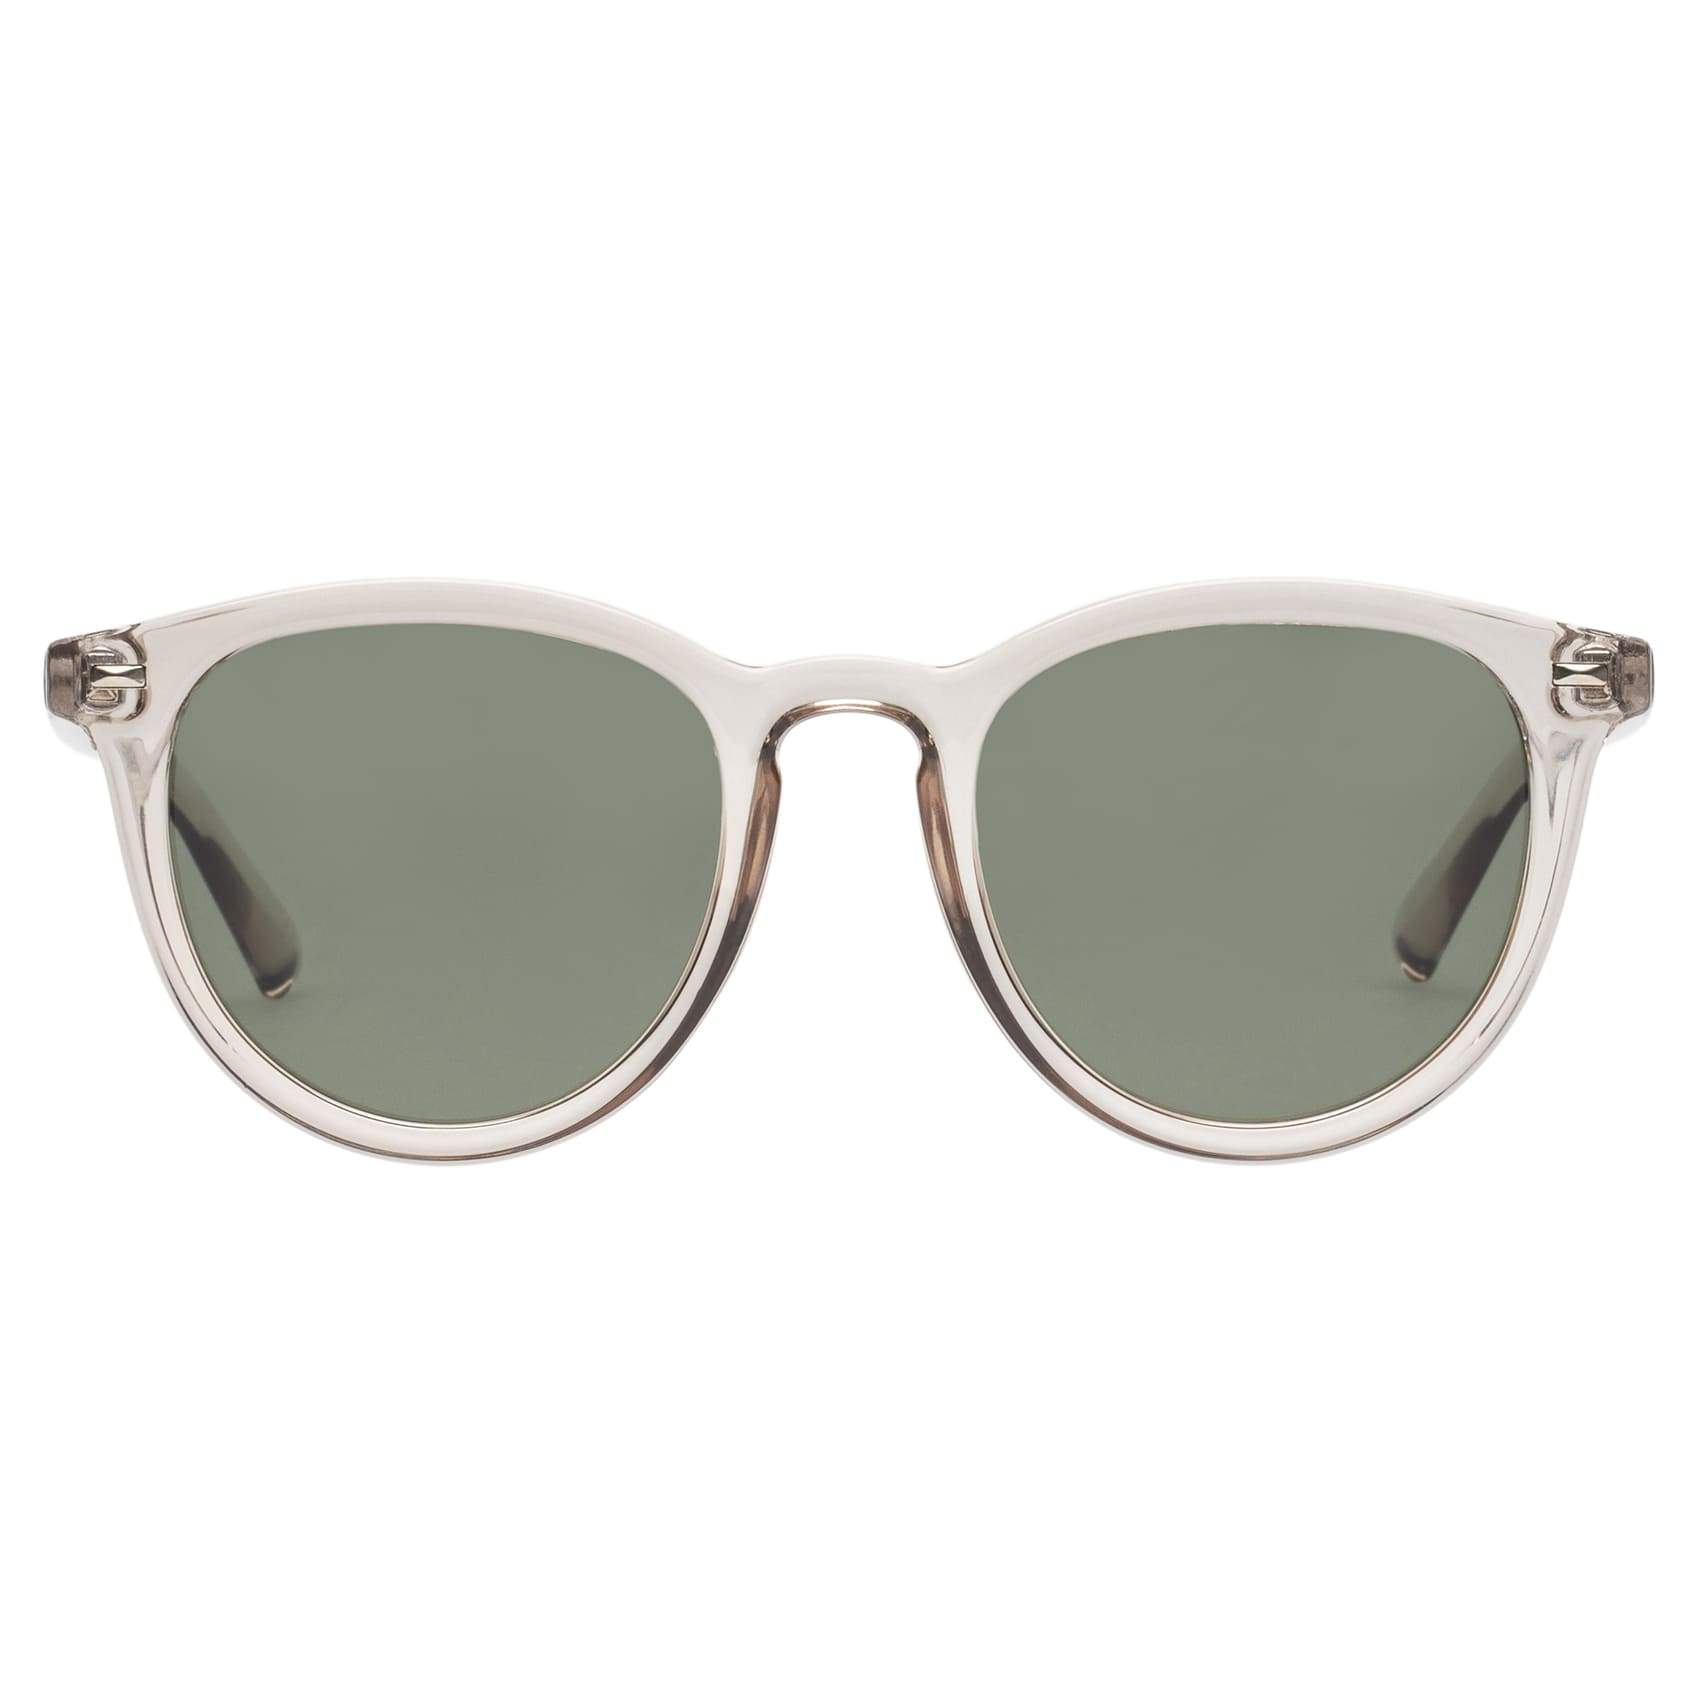 LE SPECS Fire Starter Round Sunglasses - Stone Polarized | PresenceConcept.com